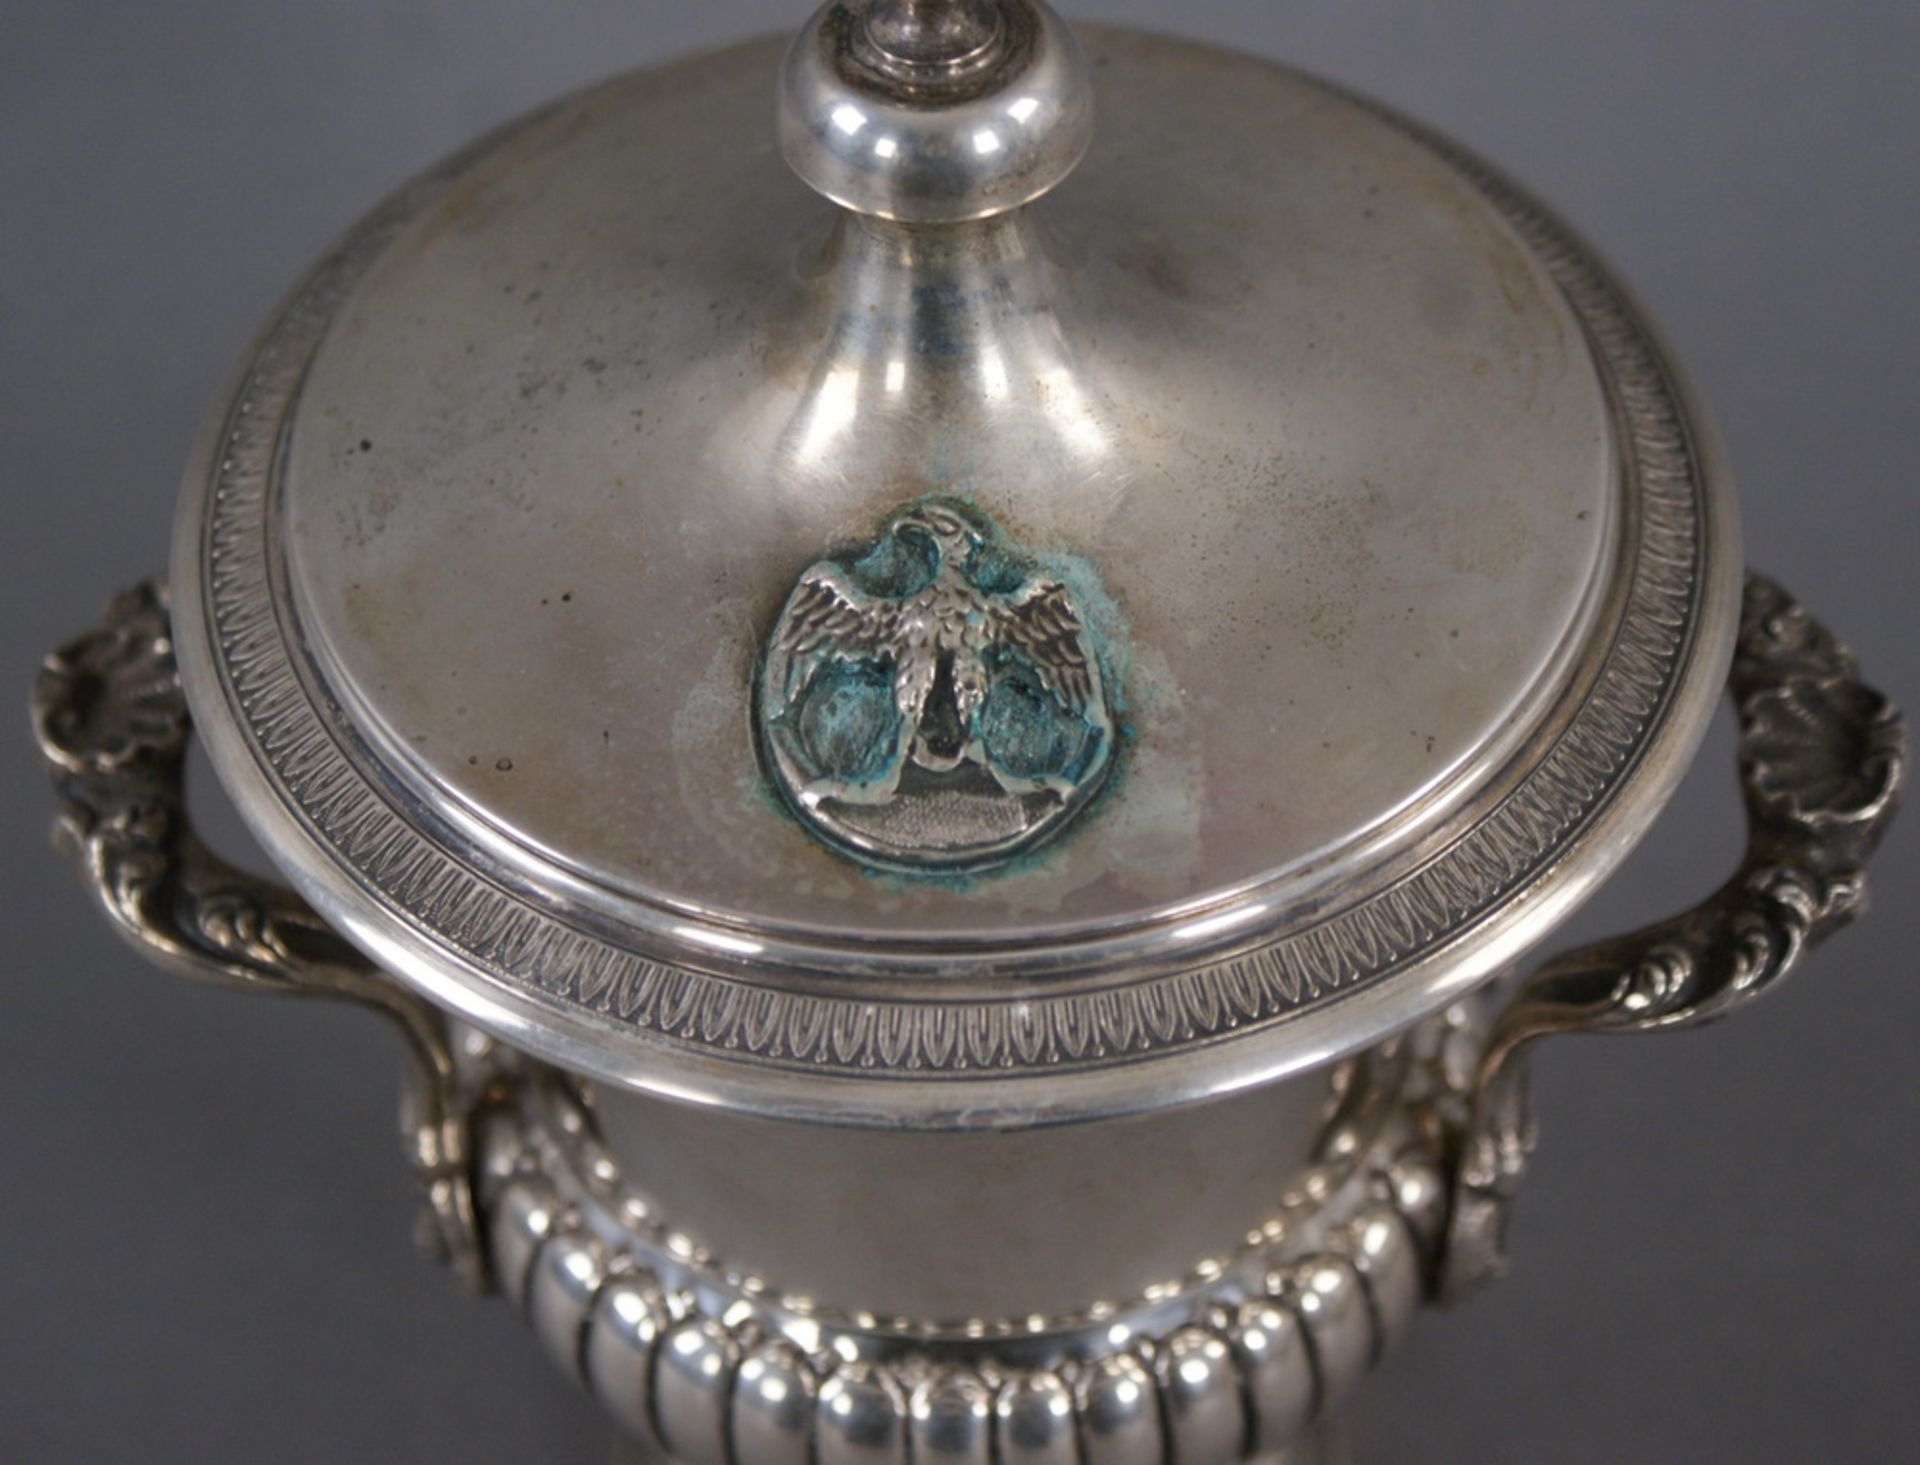 DECKELAMPHORE Silberpokal mit Deckel, 800 gepunzt, H 23,5 cm  Mindestpreis: 180 EUR - Bild 4 aus 7